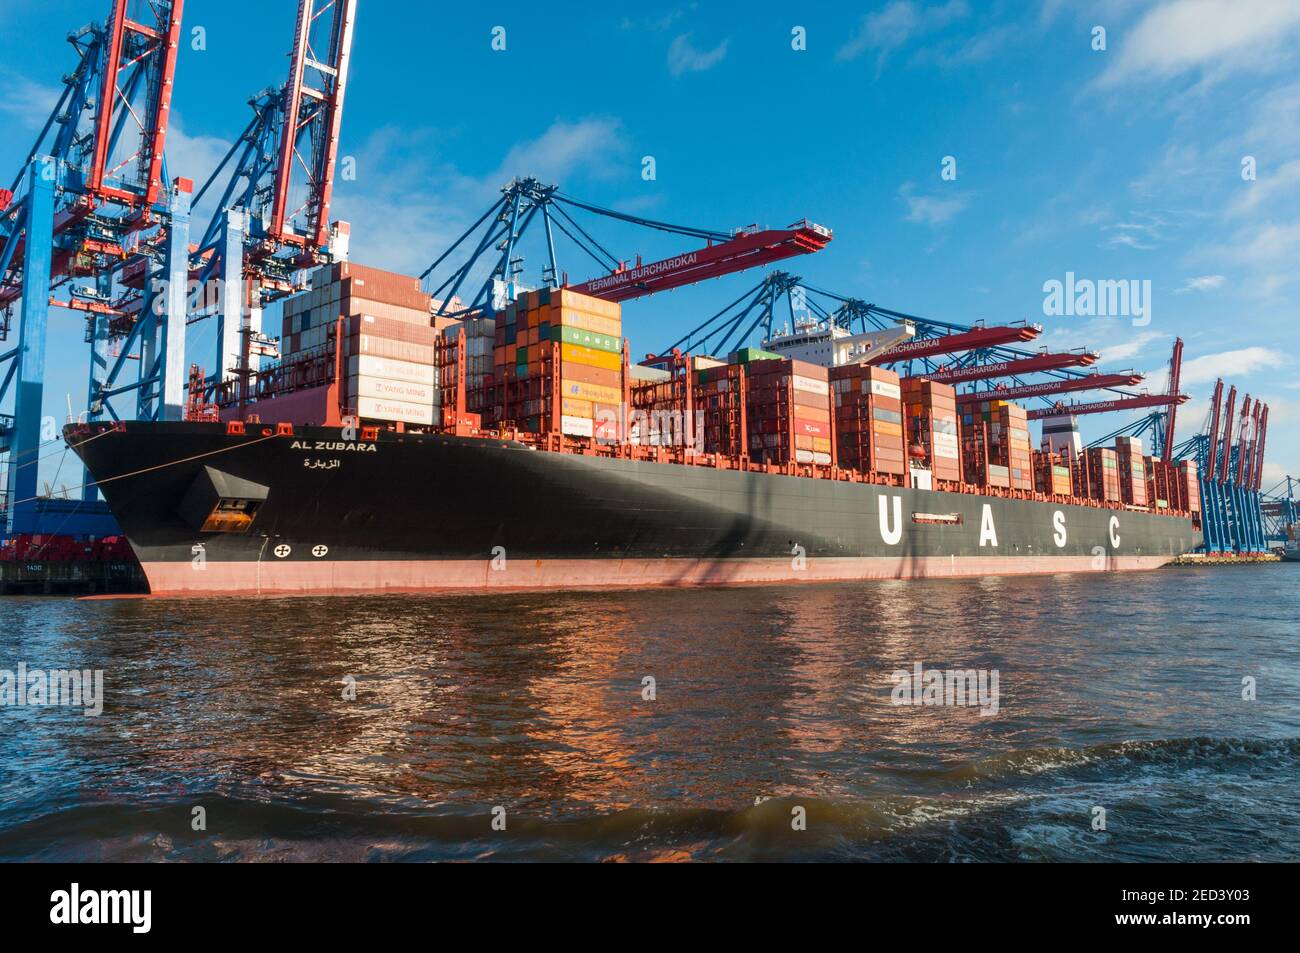 Amburgo Germania - Dicembre 16. 2017: Nave portacontainer al Zubara che è scarica nel porto di Amburgo Foto Stock